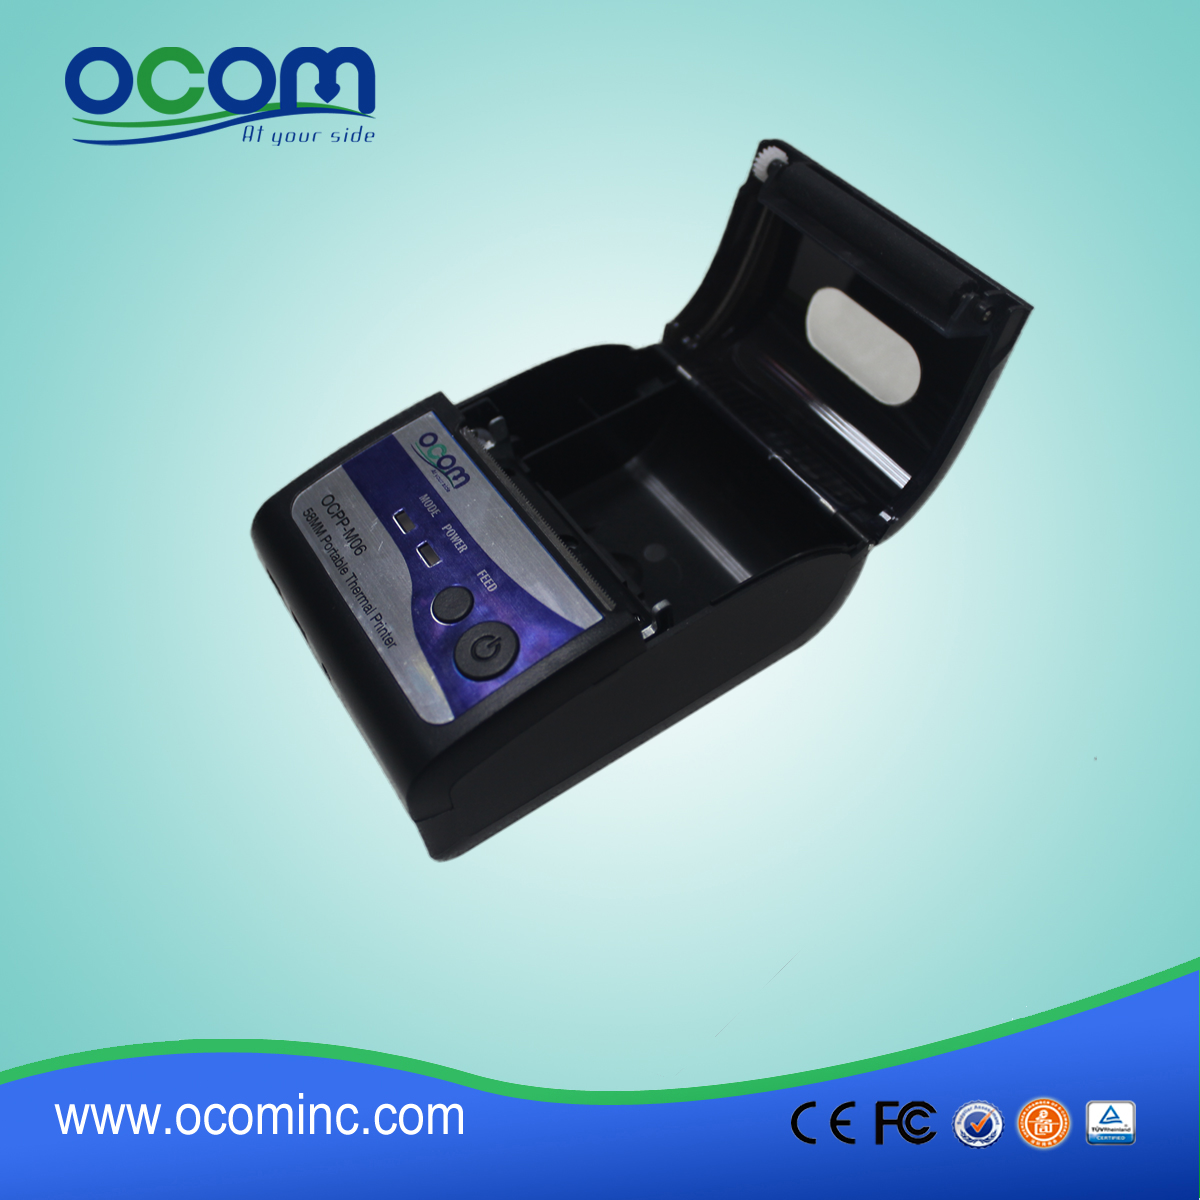 迷你便携式蓝牙票据打印机 (OCPP-M06)